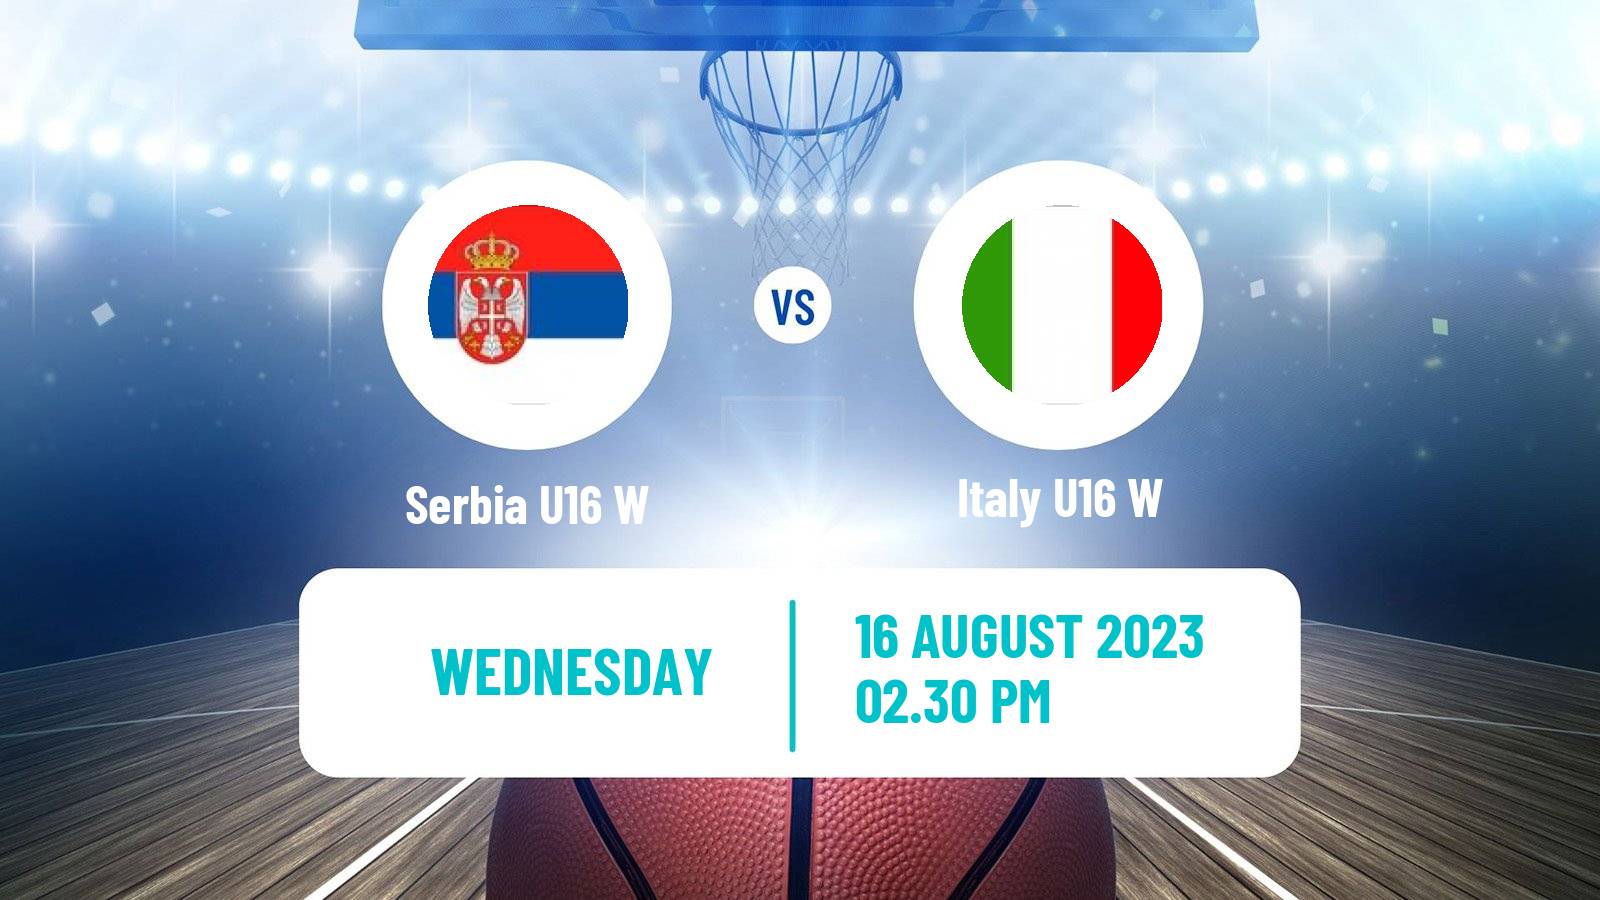 Basketball European Championship U16 Basketball Women Serbia U16 W - Italy U16 W